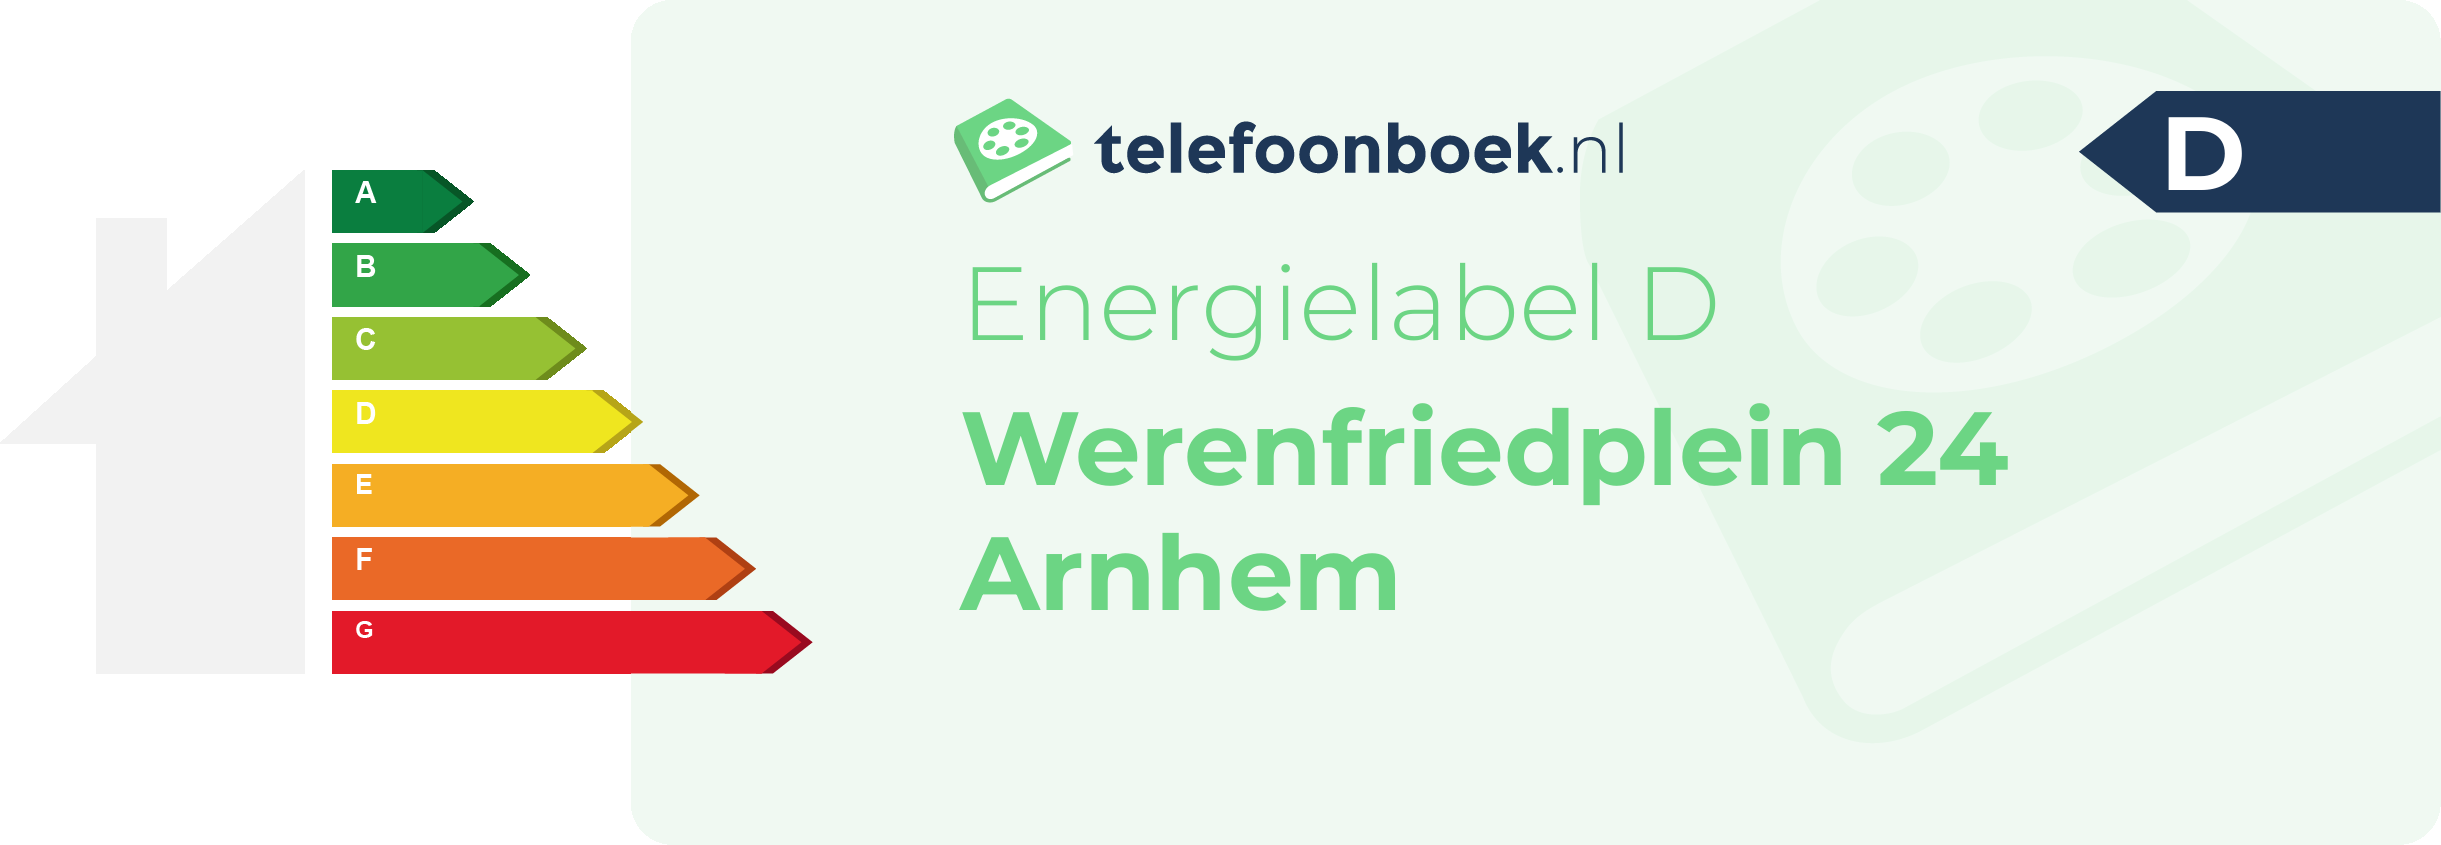 Energielabel Werenfriedplein 24 Arnhem